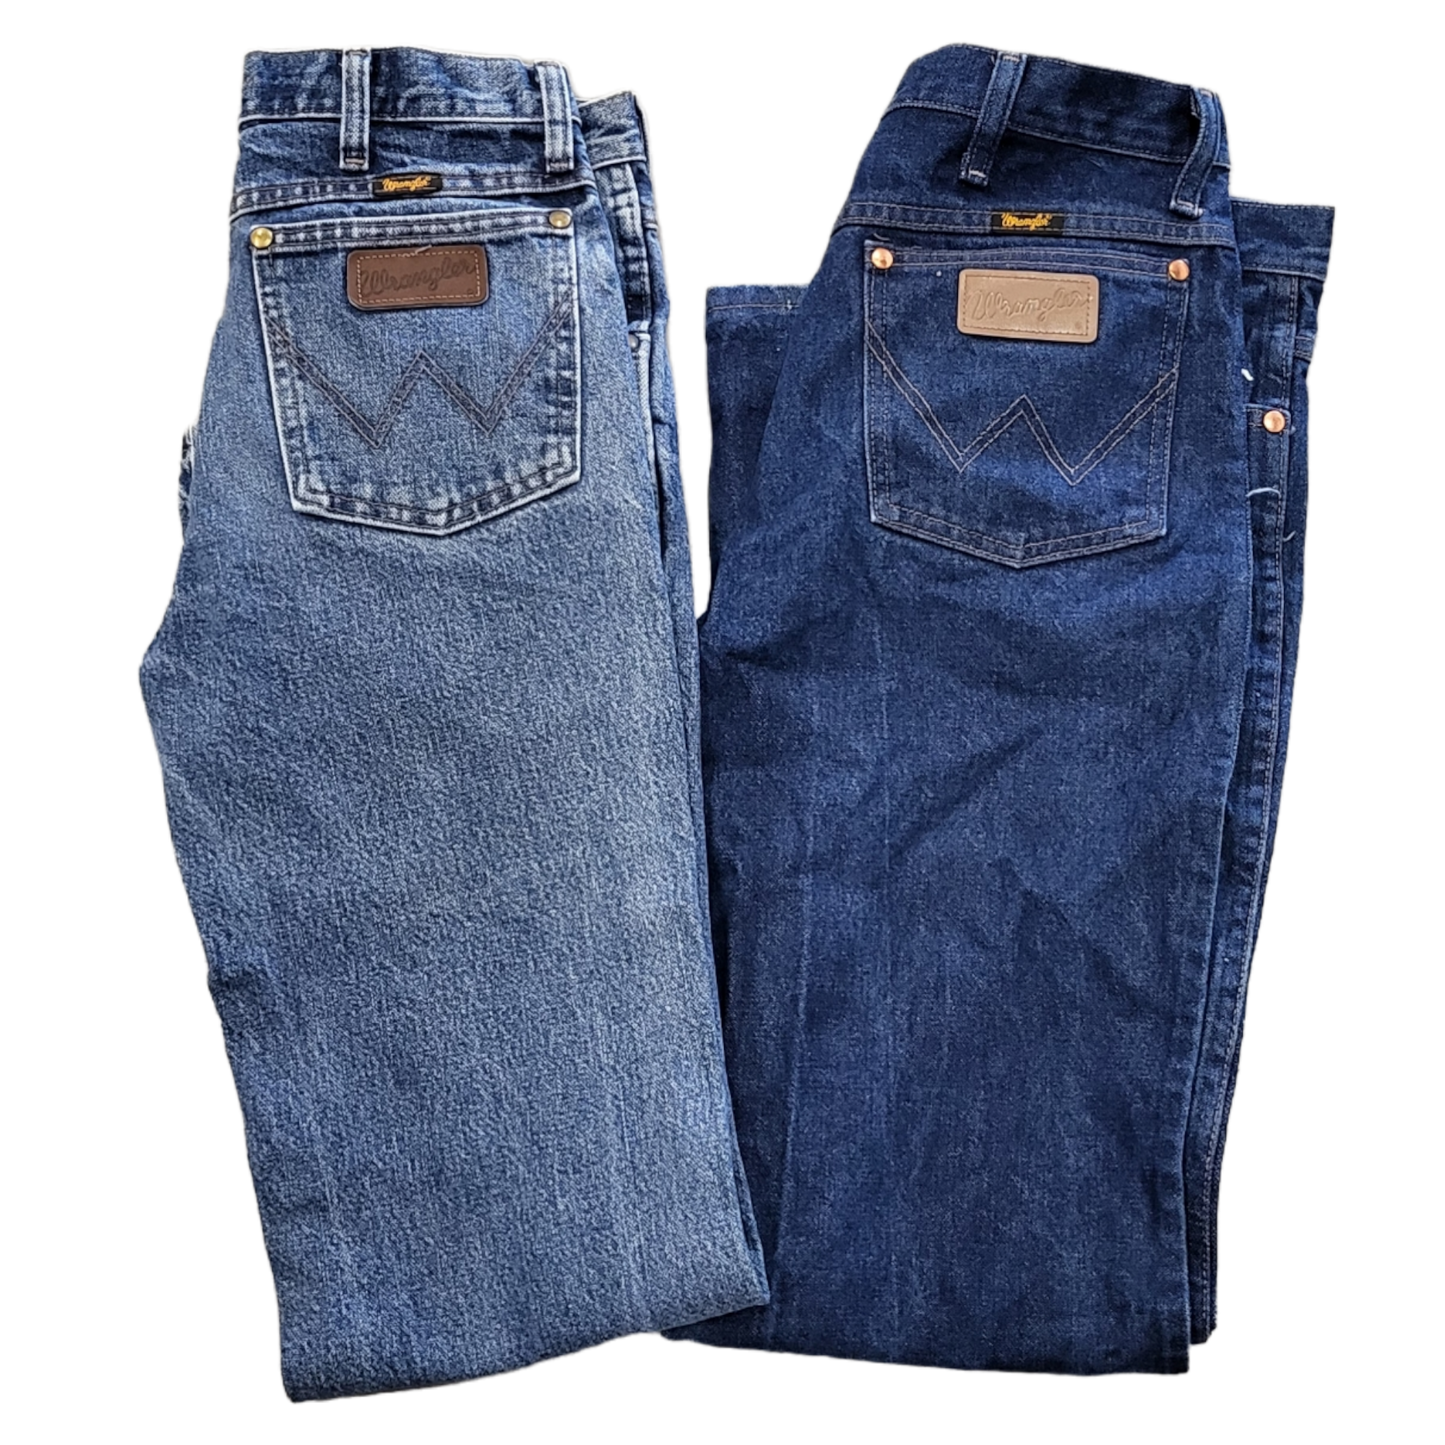 Men's Wrangler Jeans Intro Pack